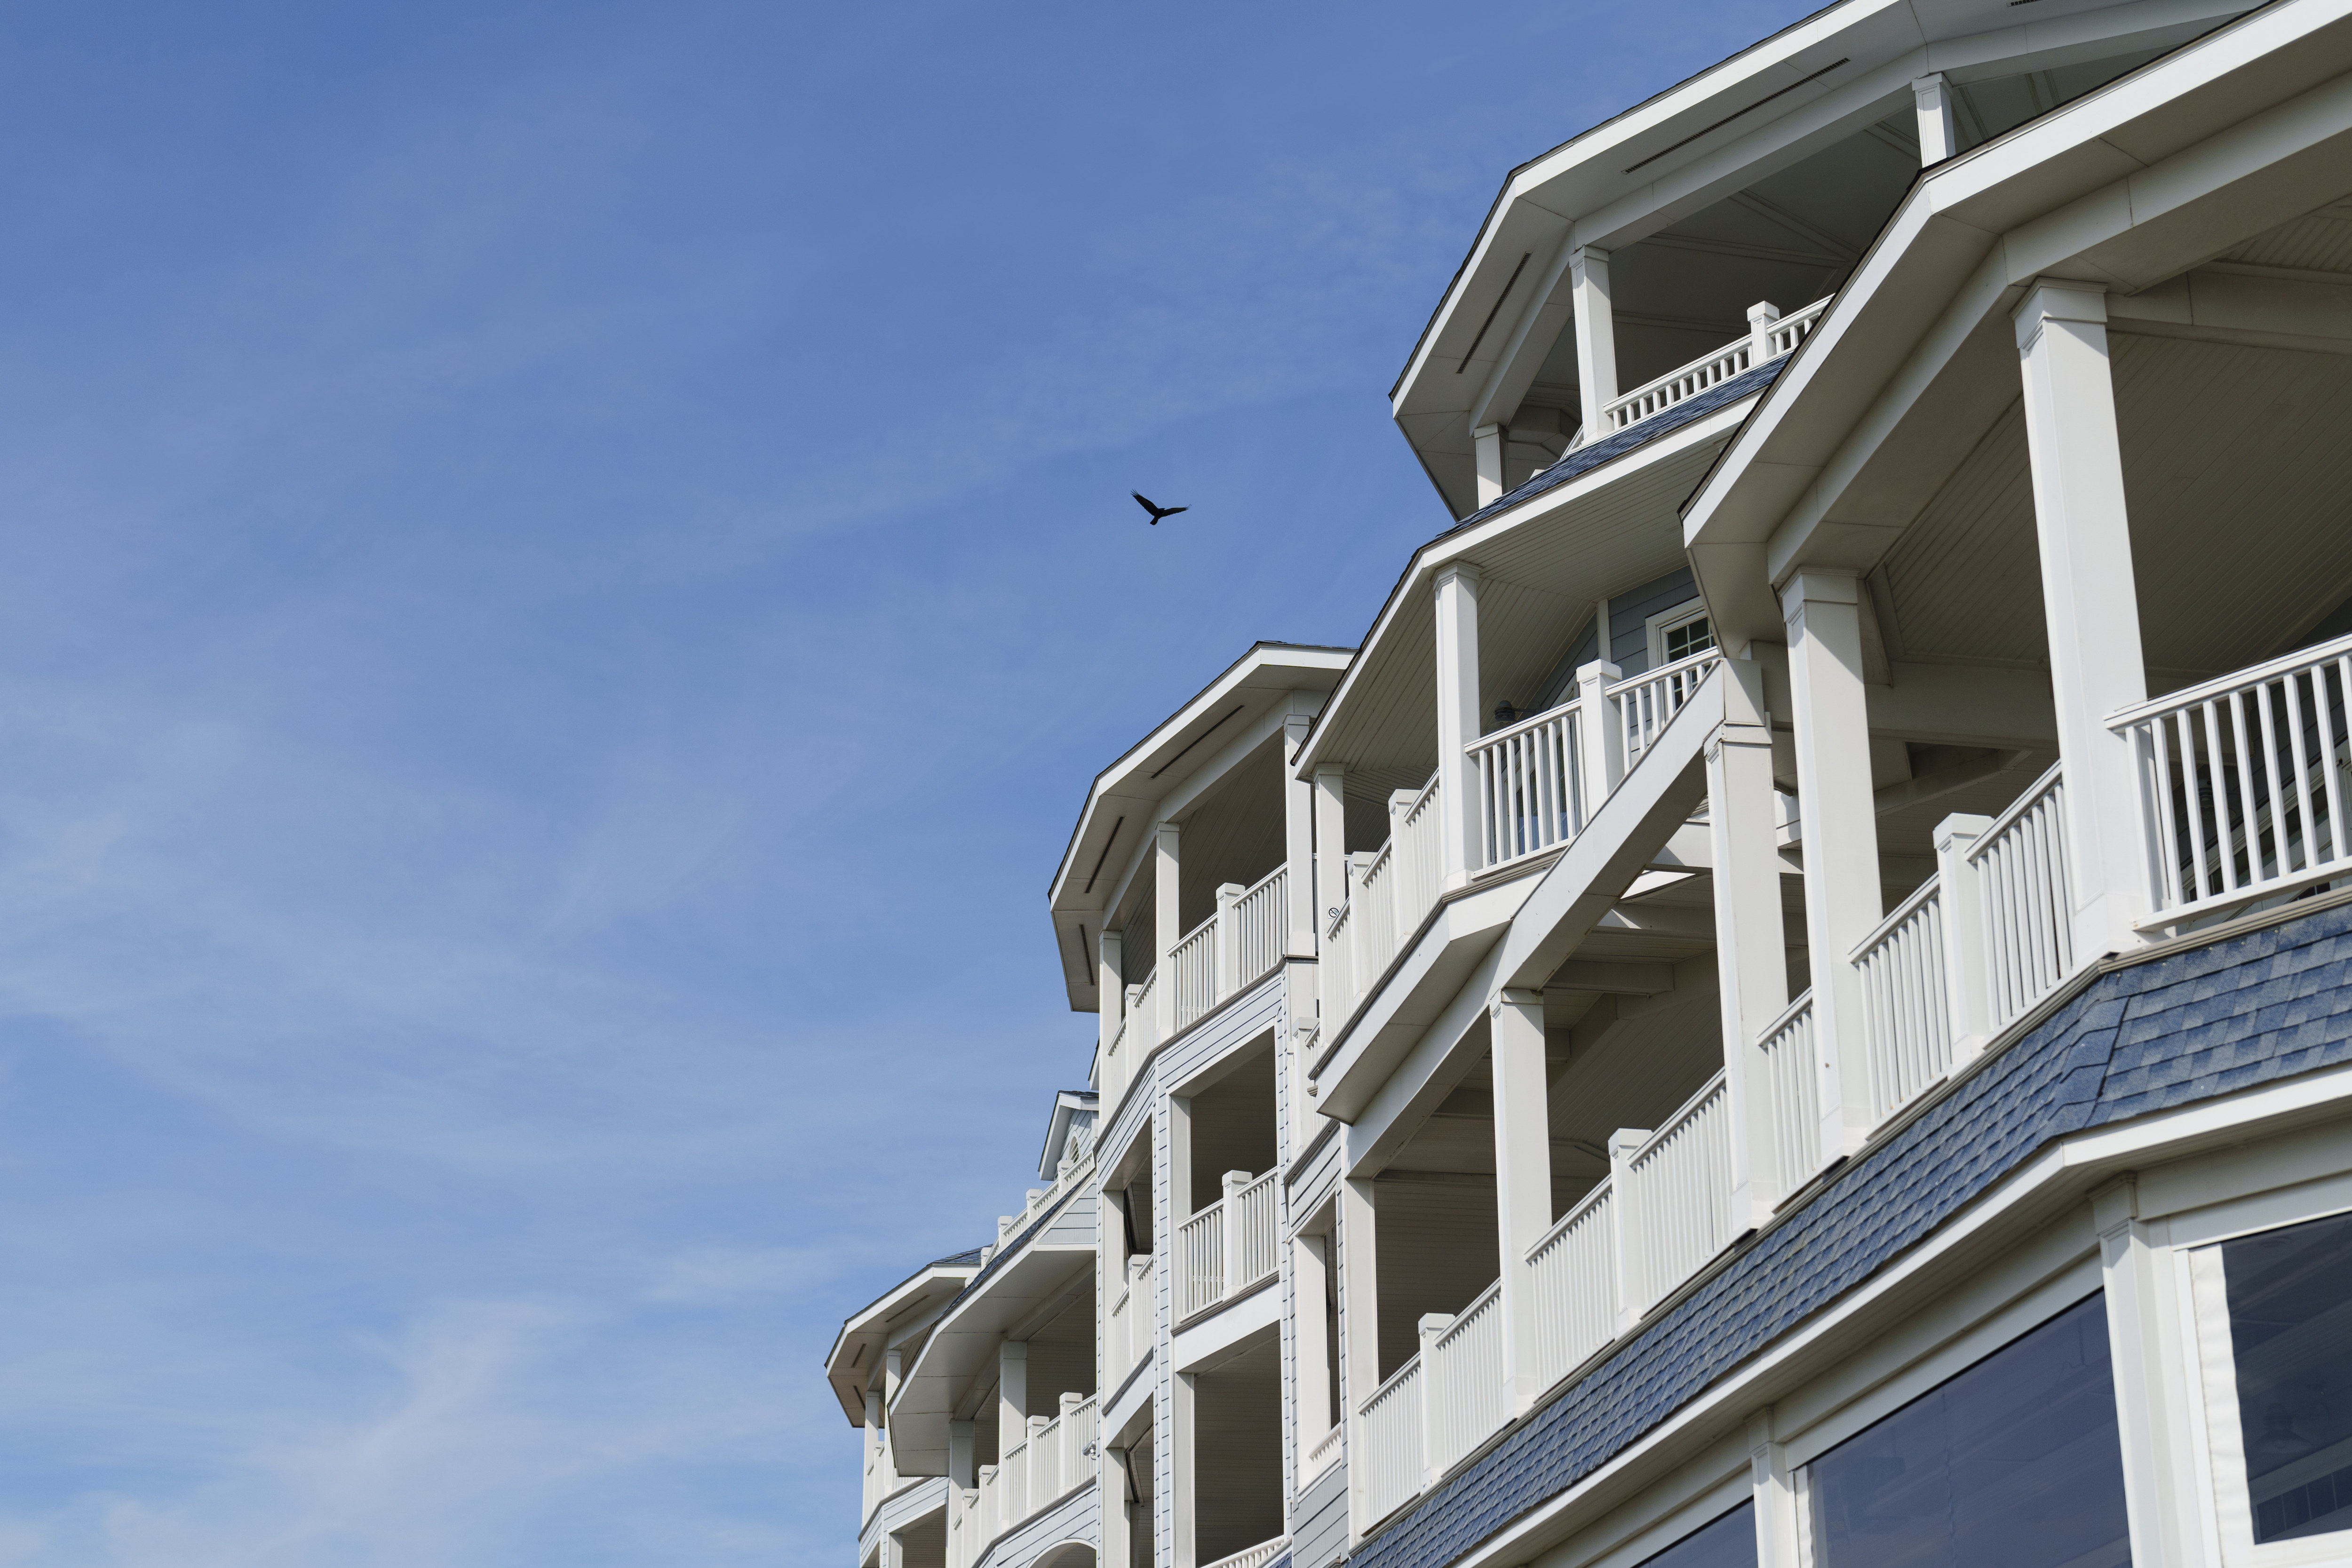 Hotel exterior with bird fying overhead